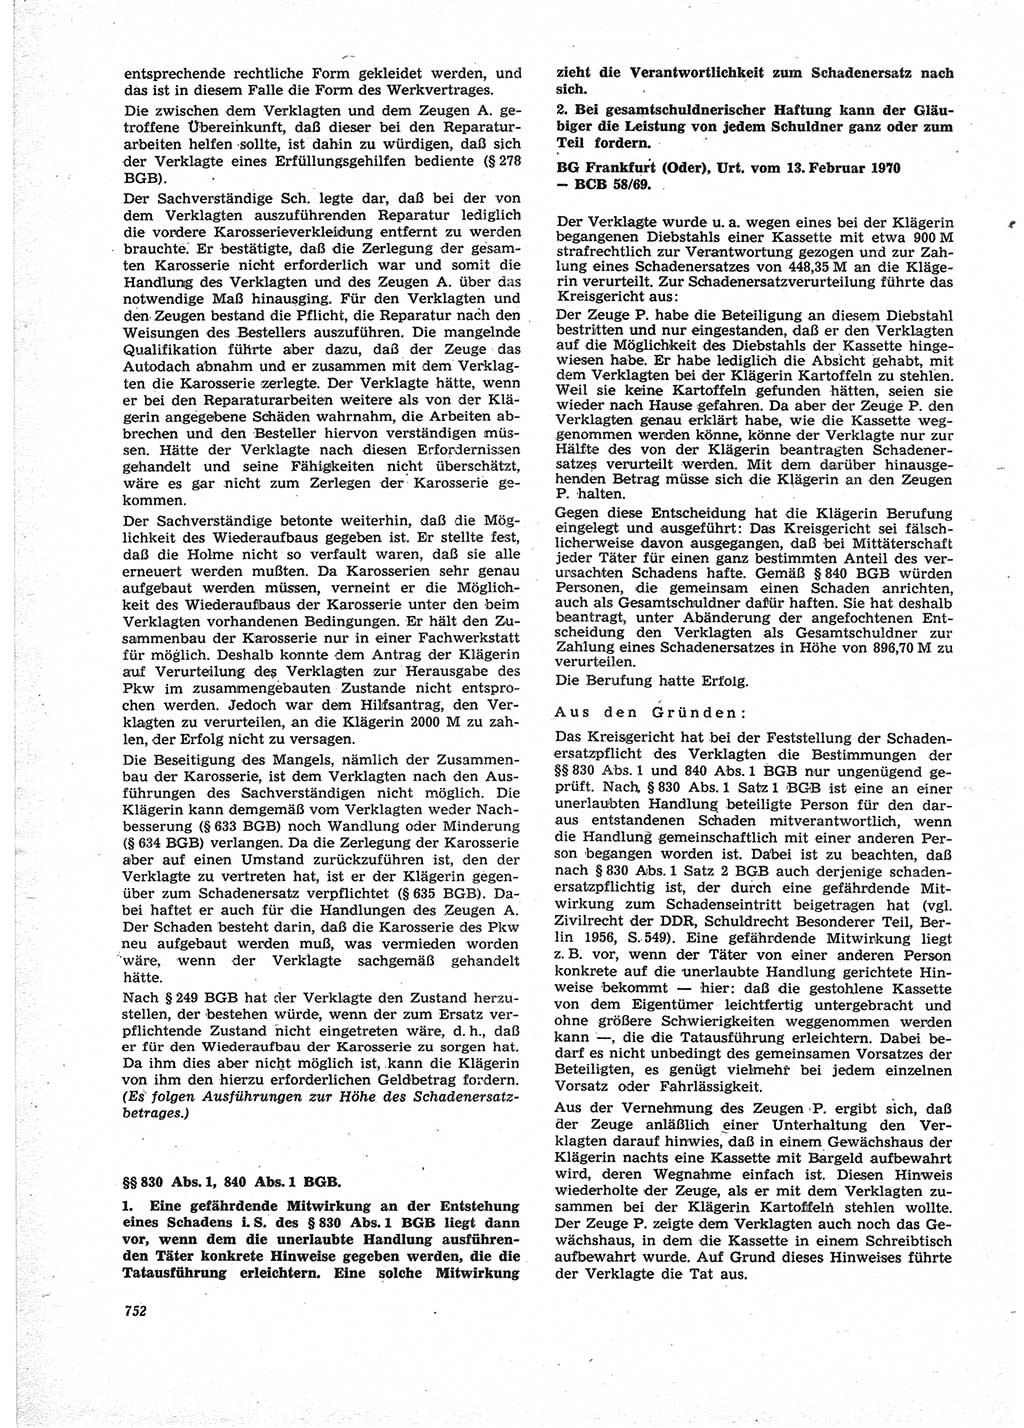 Neue Justiz (NJ), Zeitschrift für Recht und Rechtswissenschaft [Deutsche Demokratische Republik (DDR)], 25. Jahrgang 1971, Seite 752 (NJ DDR 1971, S. 752)